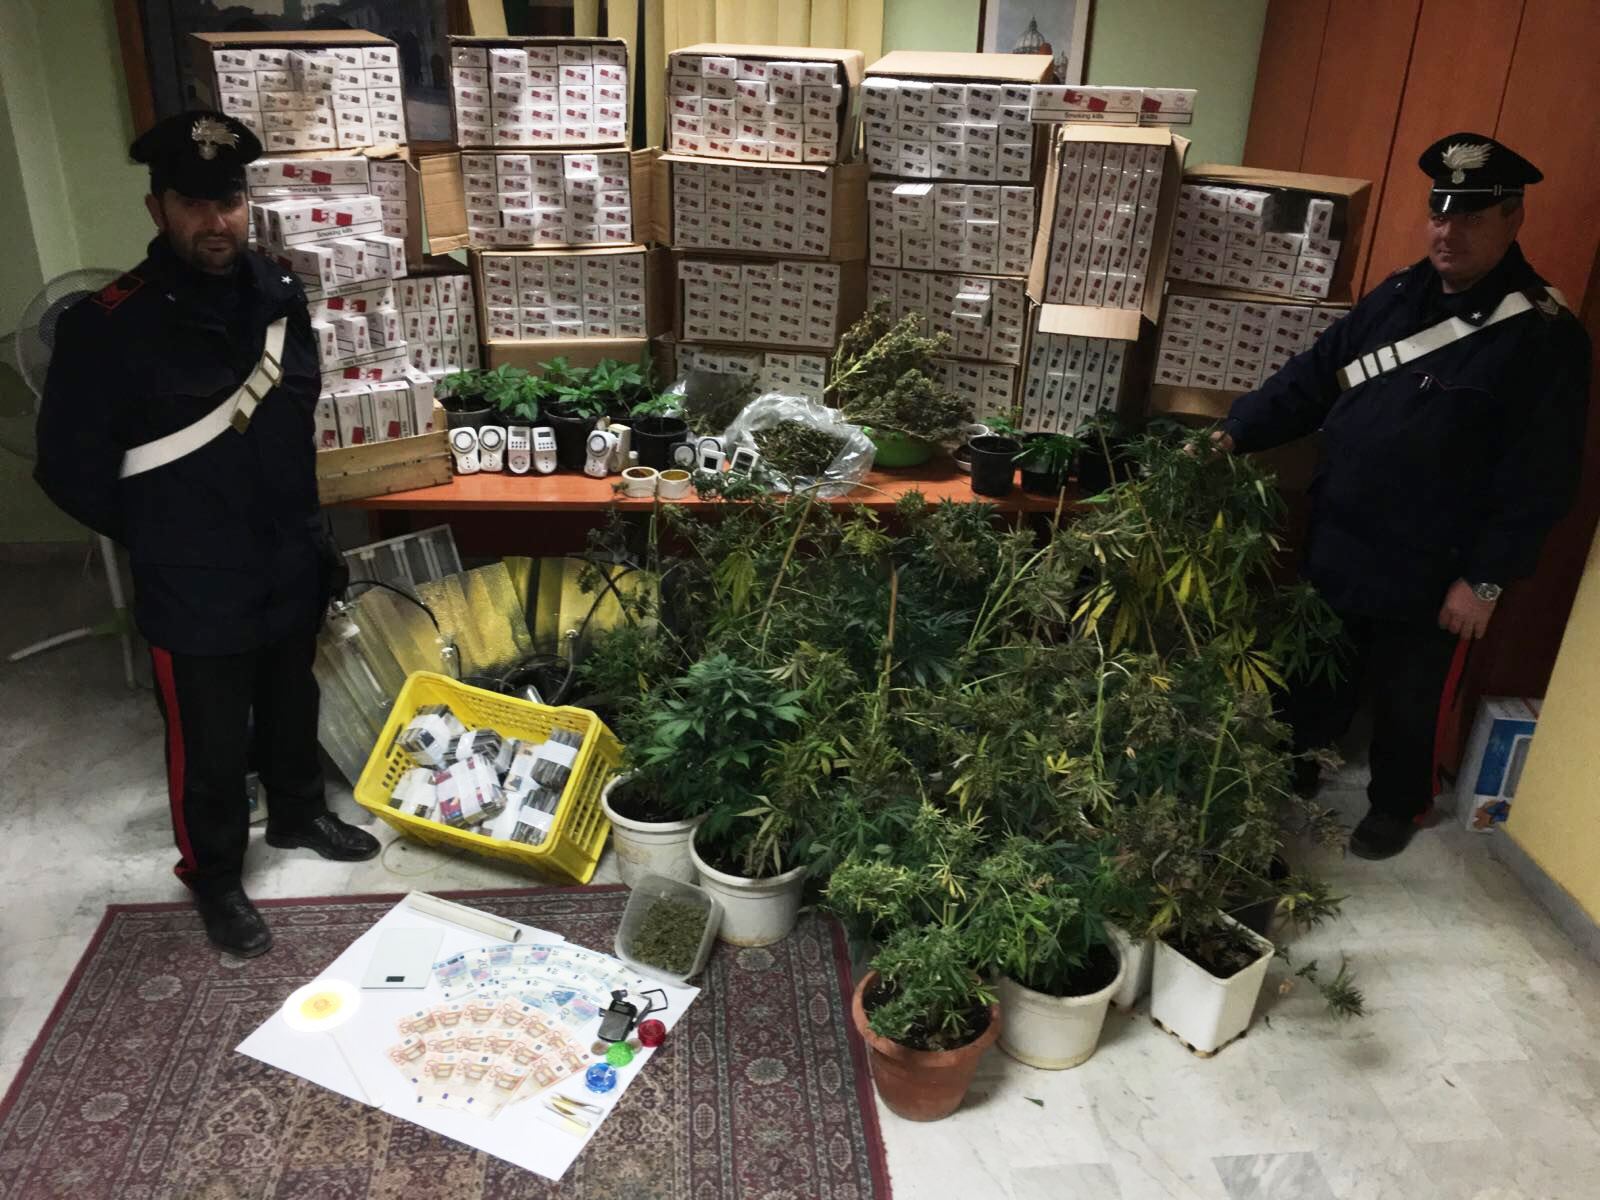  Acerra, nascondeva nel garage piante di cannabis, sigarette di contrabbando e dvd pirata: arrestato 52enne